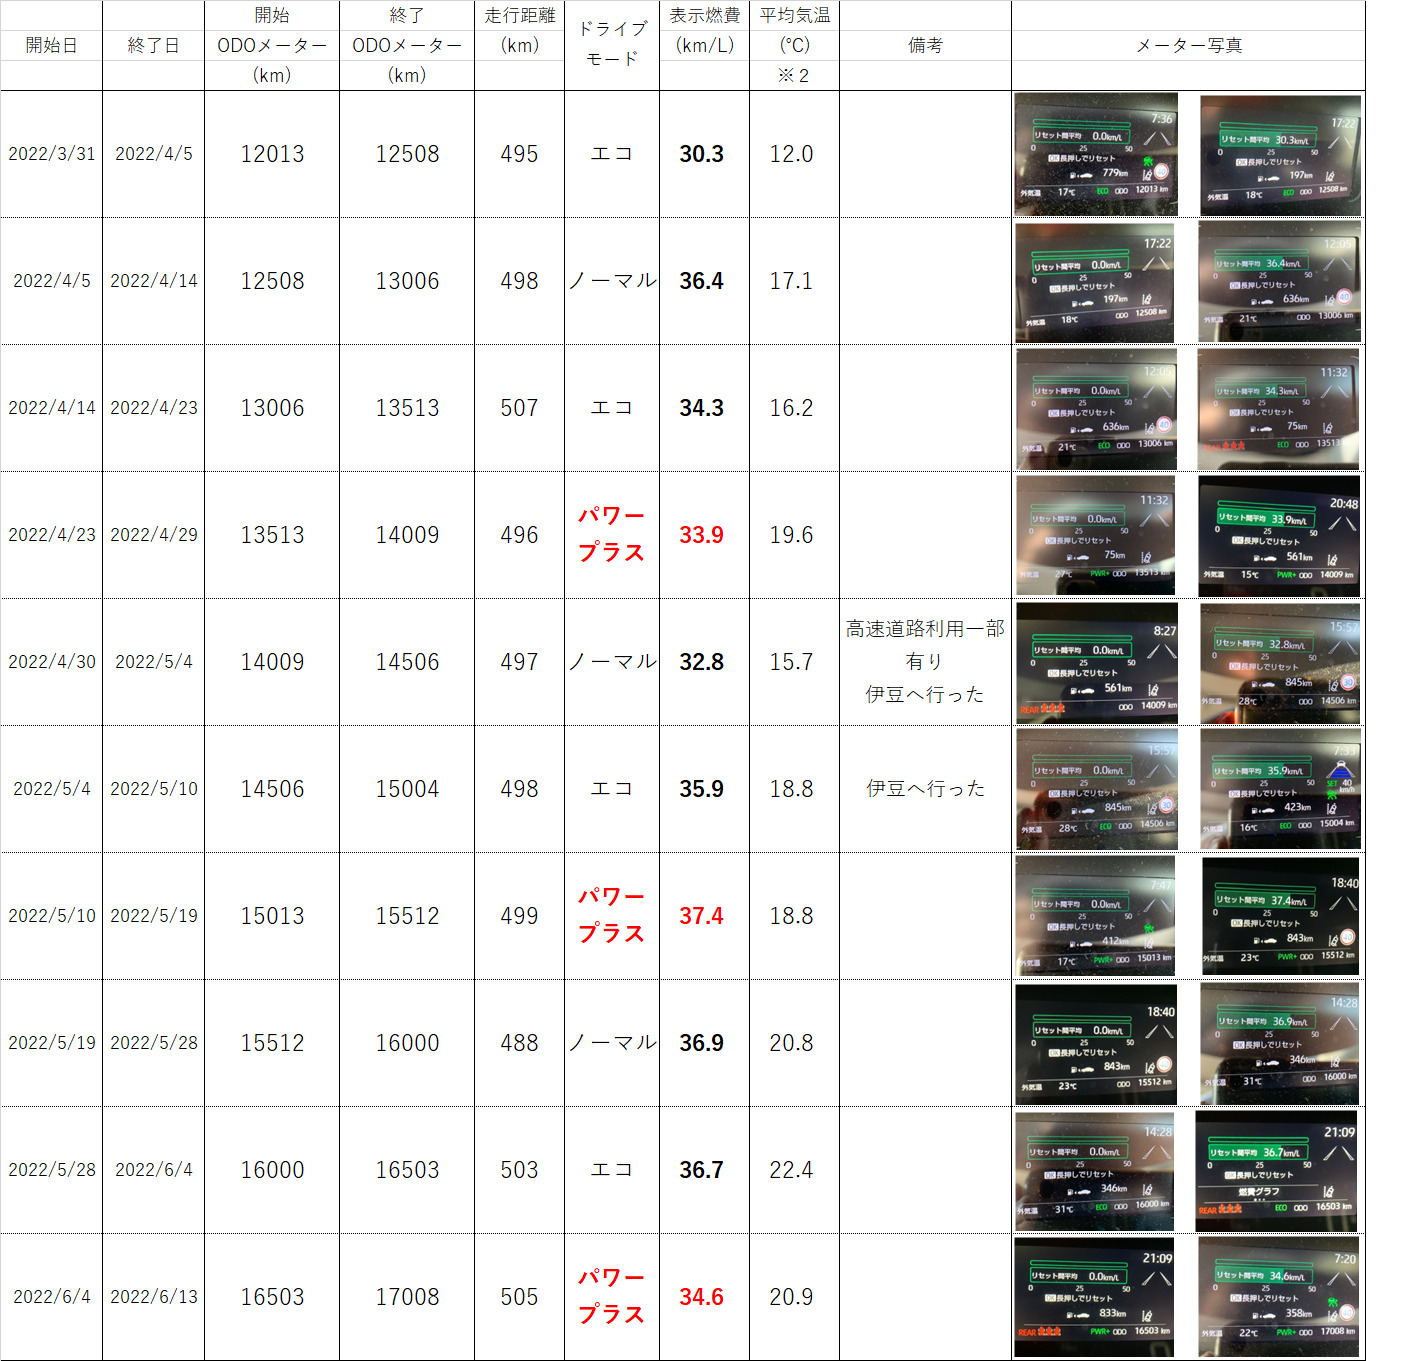 ドライブモードの違いによる燃費検証結果一覧表